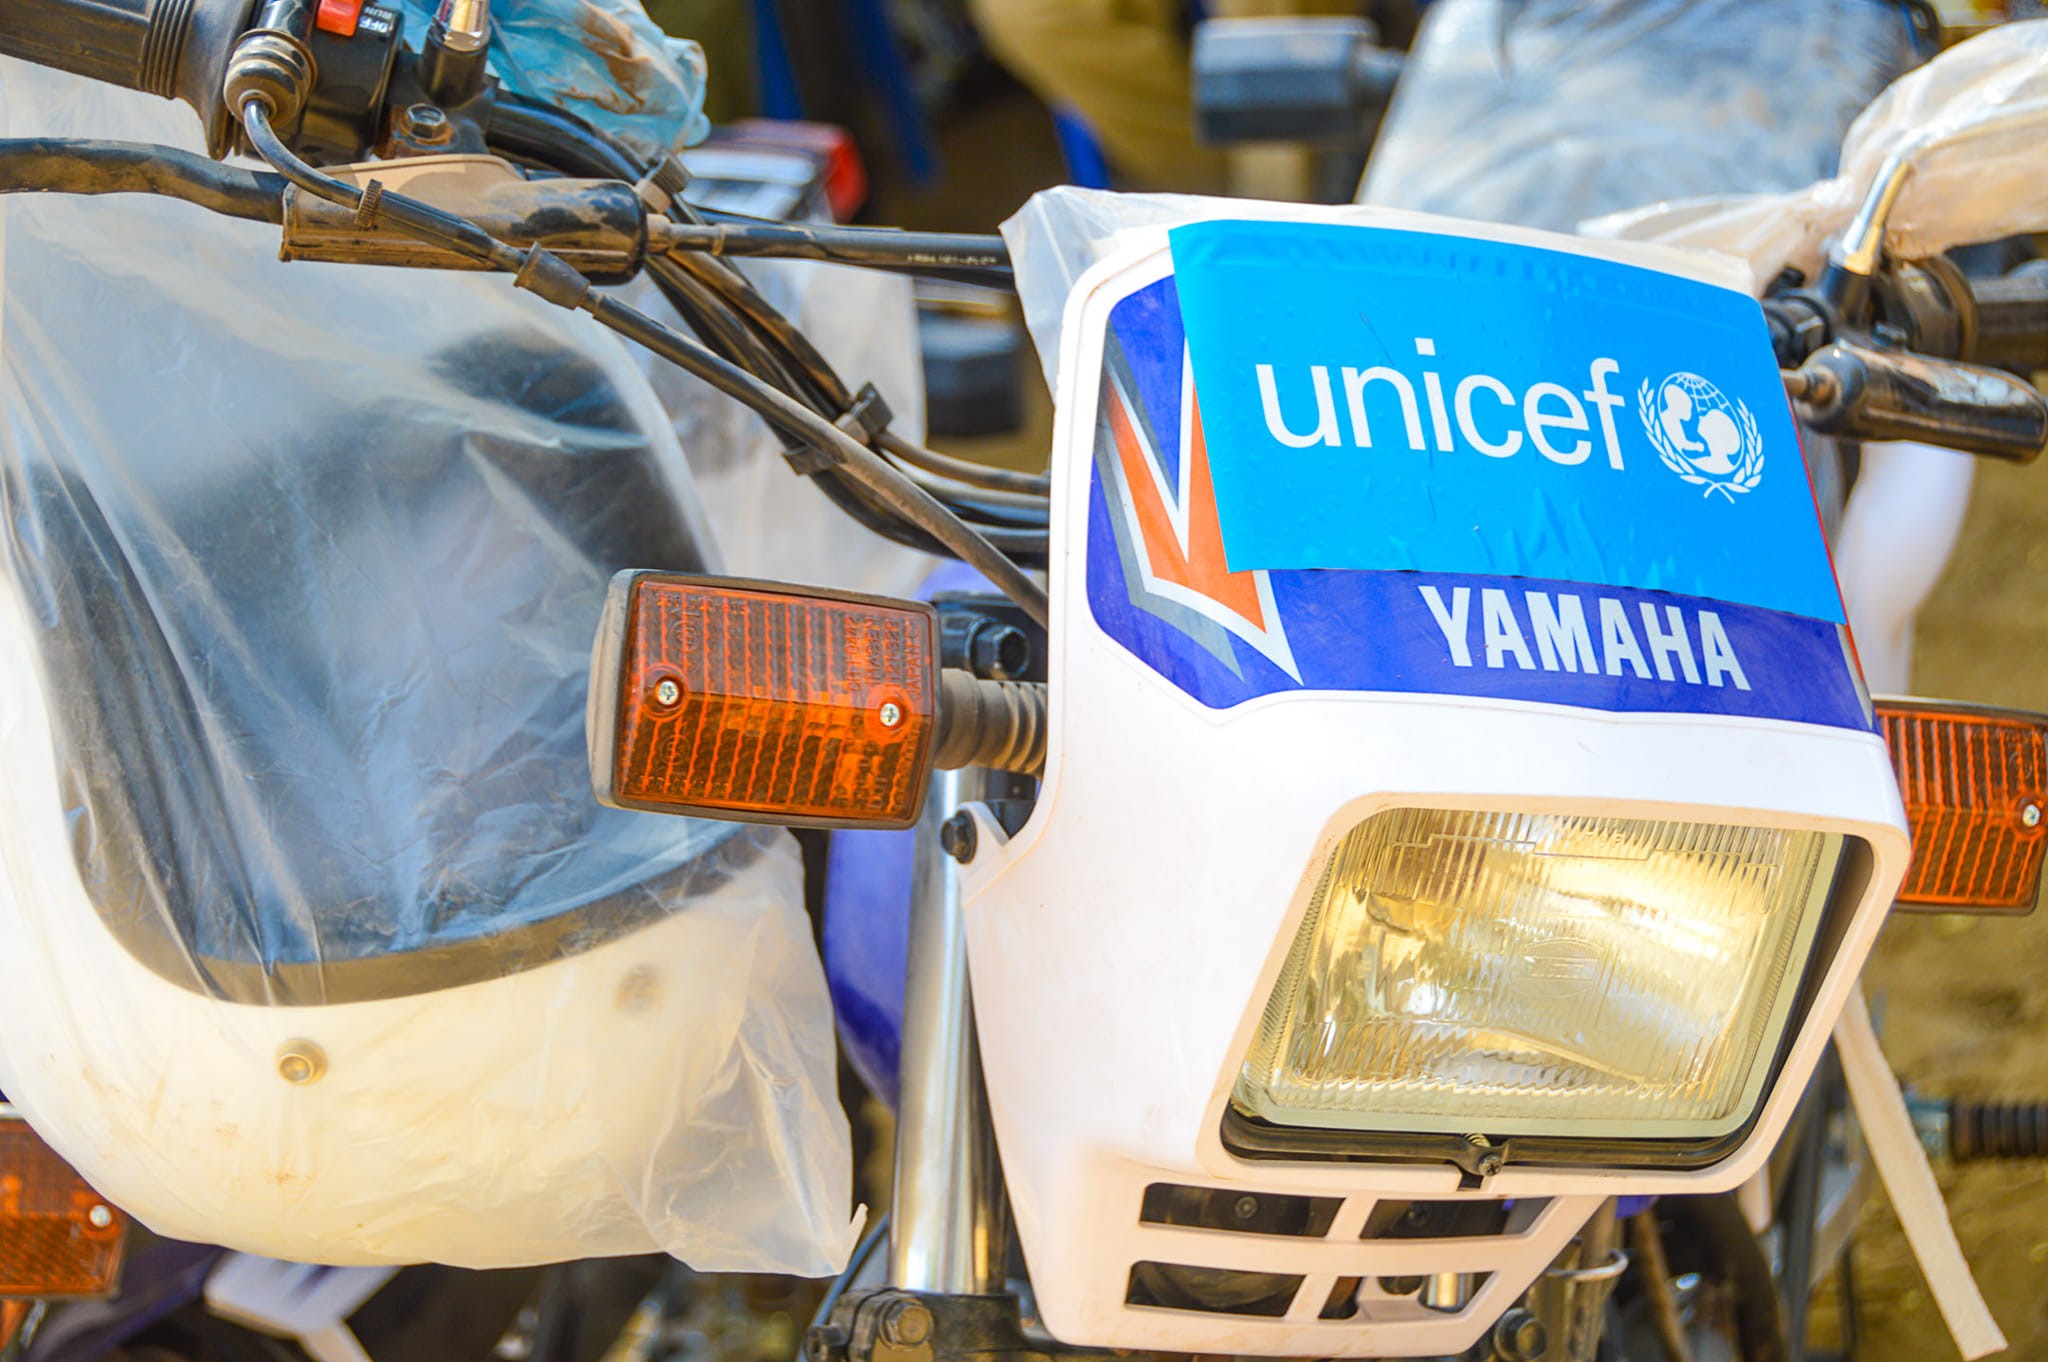 Le Tchad : un appui de l'UNICEF au ministère de l'Éducation nationale avec du matériel roulant et du bureau